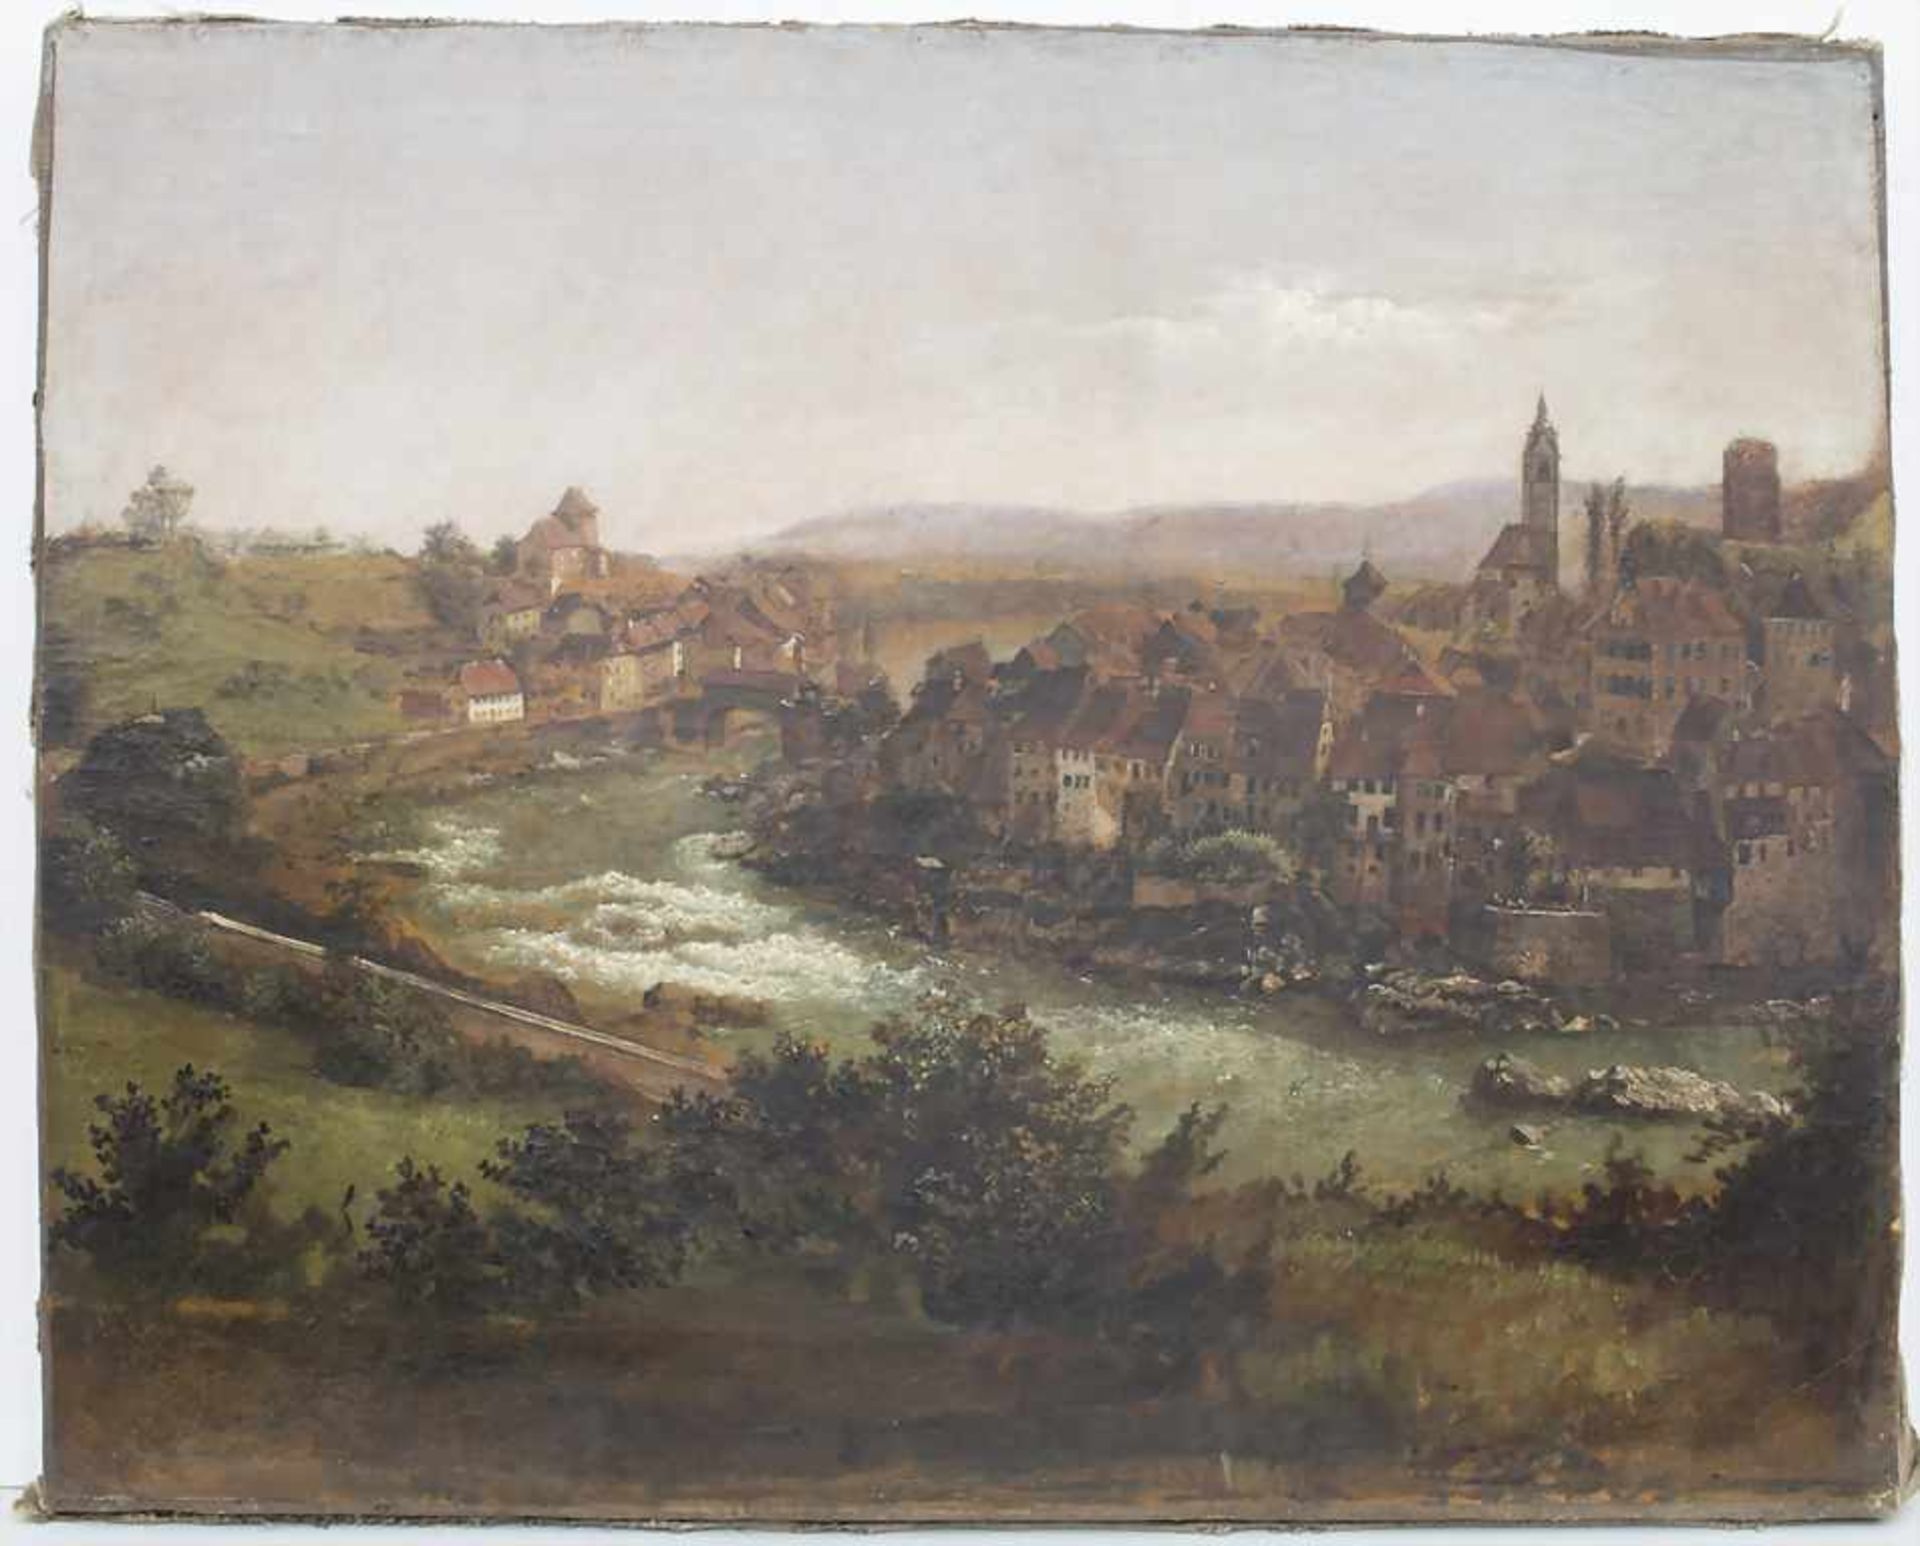 Künstler des 18. Jh., 'Blick auf eine Mittelalterstadt' / 'A view on a medieval town'